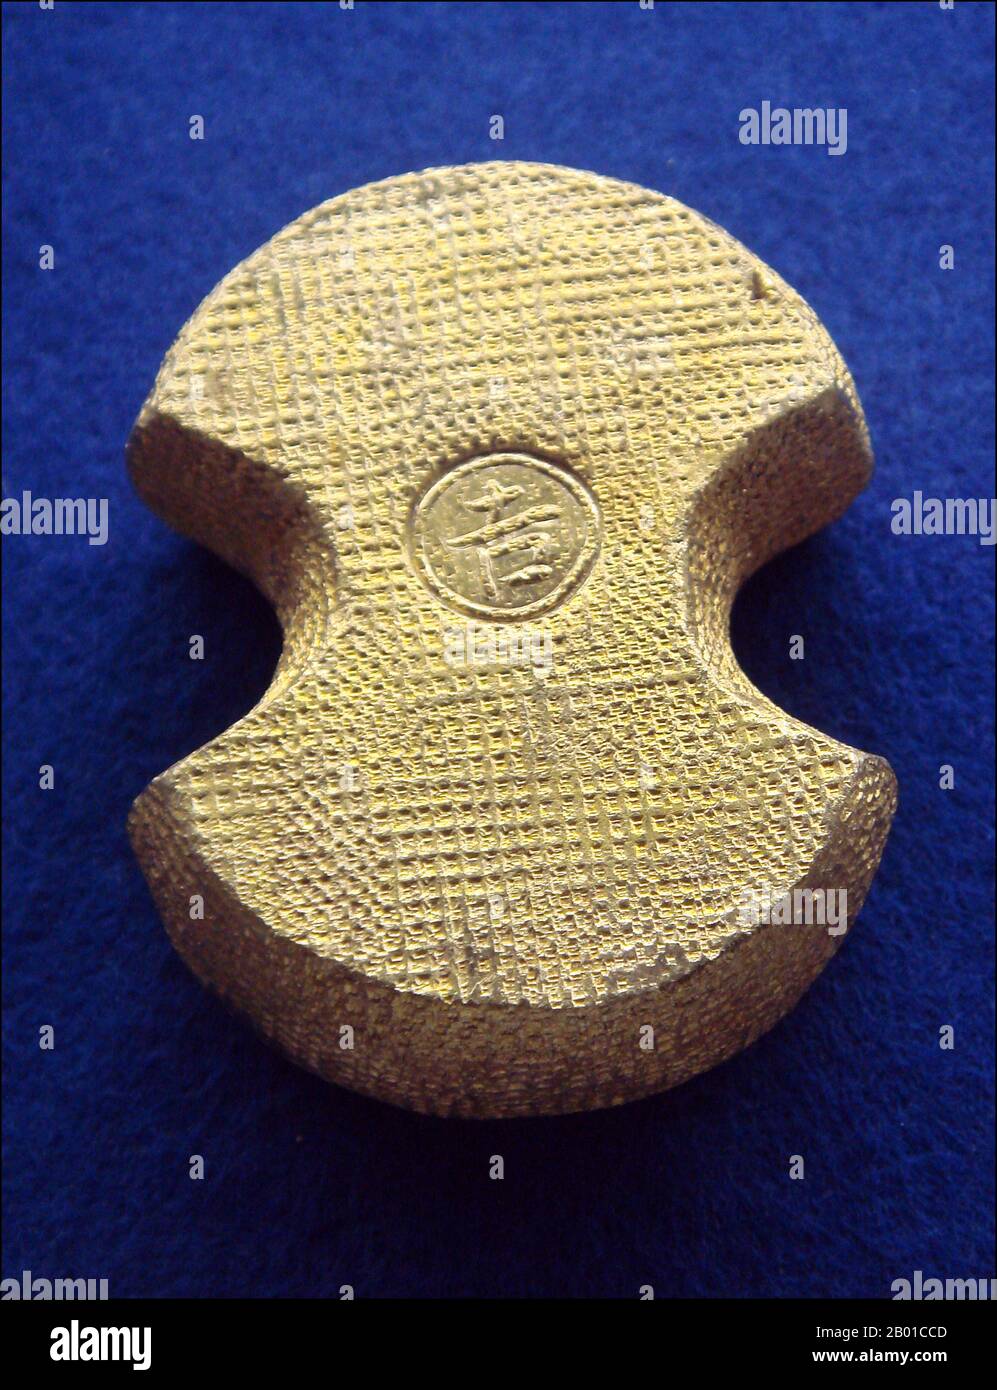 Giappone: Moneta d'oro 'Kobundo' del periodo Tokugawa. Photo by PHGCOM (licenza CC BY-SA 3,0). Dal 16th ° secolo, le valute locali hanno cominciato ad essere fatte in Giappone, con la coniatura di monete locali, a volte in oro. Il clan Takeda di Kōshū coniò monete d'oro che furono successivamente adottate dallo Shogunato Tokugawa. Hideyoshi unificò il Giappone, e centralizzò quindi la maggior parte delle coniazioni di monete d'argento e d'oro di grande taglio, mettendo effettivamente in atto la base di un sistema monetario unificato. Sviluppò la grande piastra di Ōban, chiamata anche Tenshō Ōban, nel 1588, un predecessore della moneta d'oro Tokugawa. Foto Stock